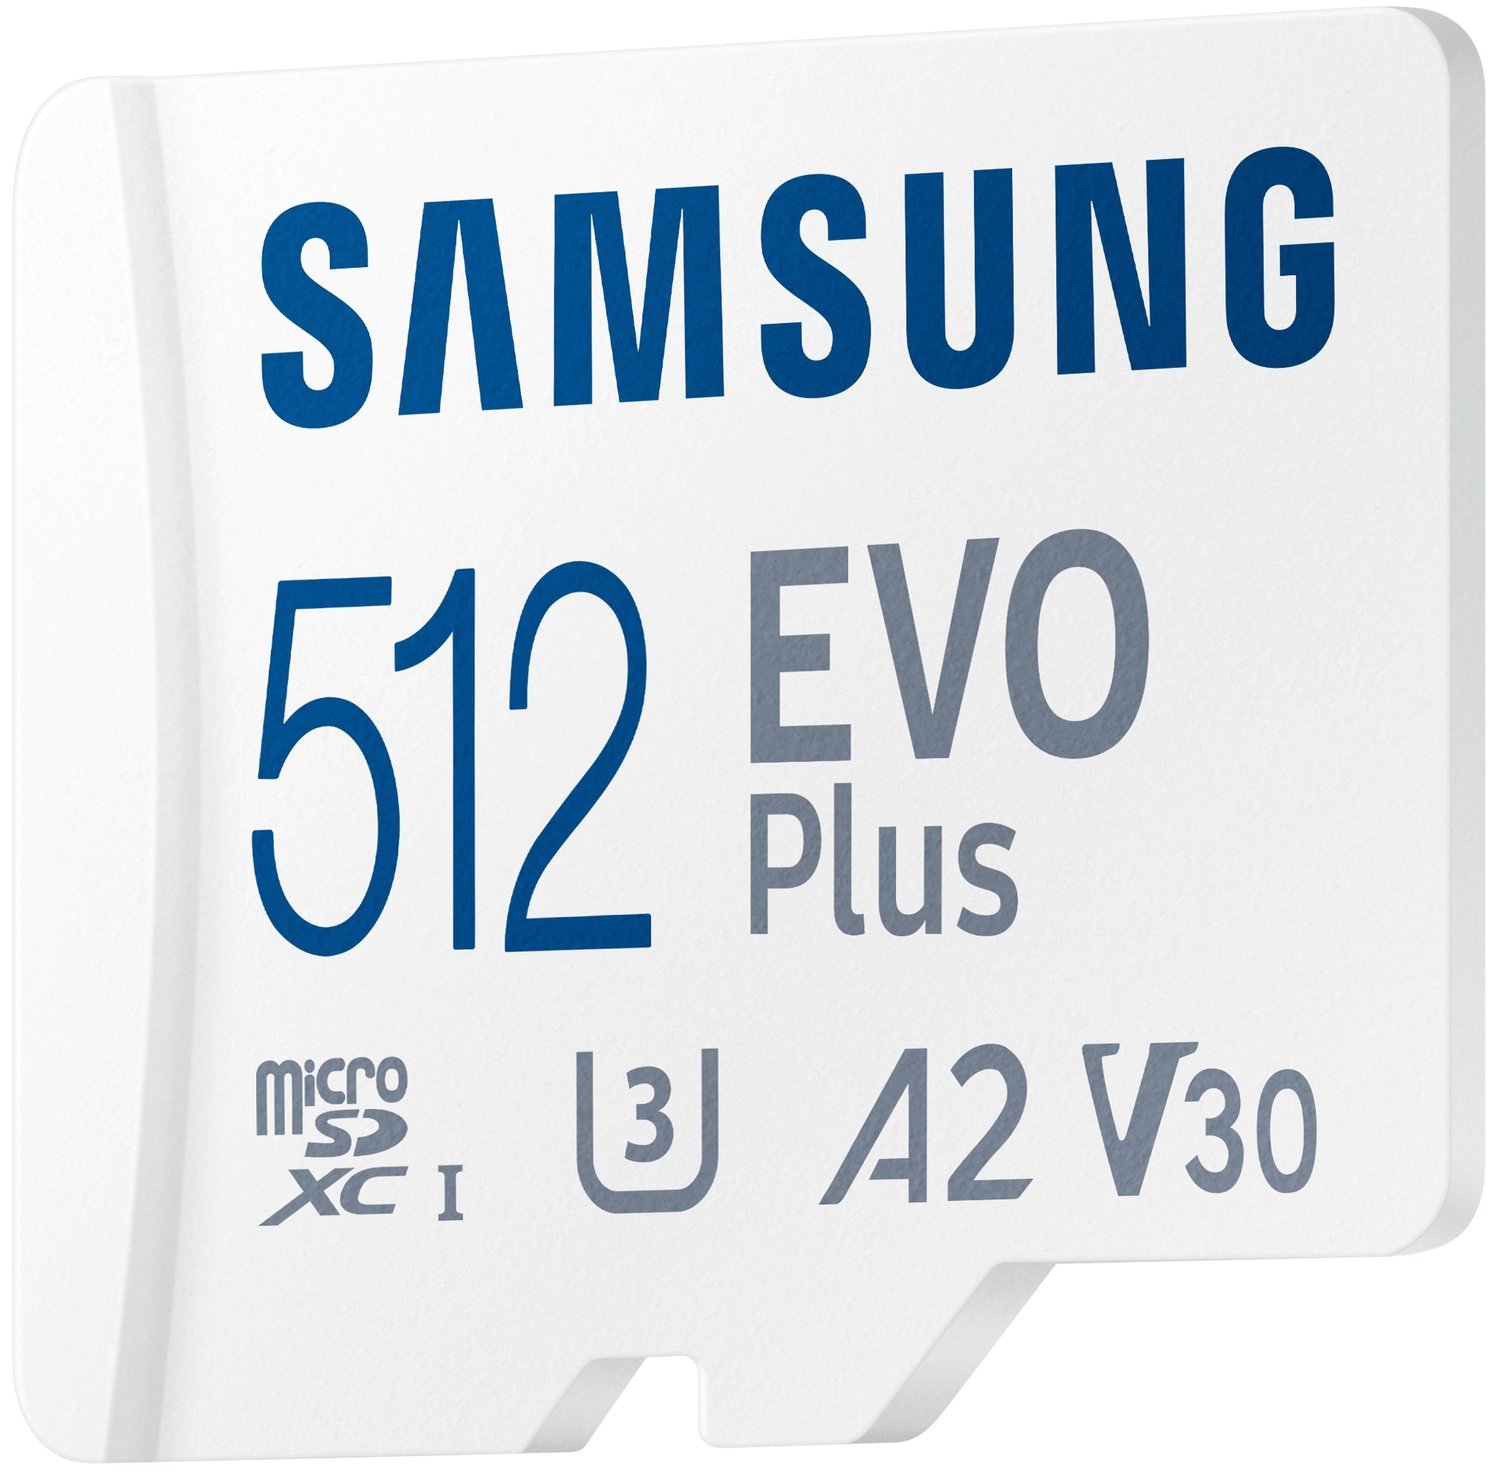 豪華で新しい 全品Point+10倍 最大倍率30.5% 512GB microSDXCカード microSDカード Samsung サムスン EVO  Plus shipsctc.org